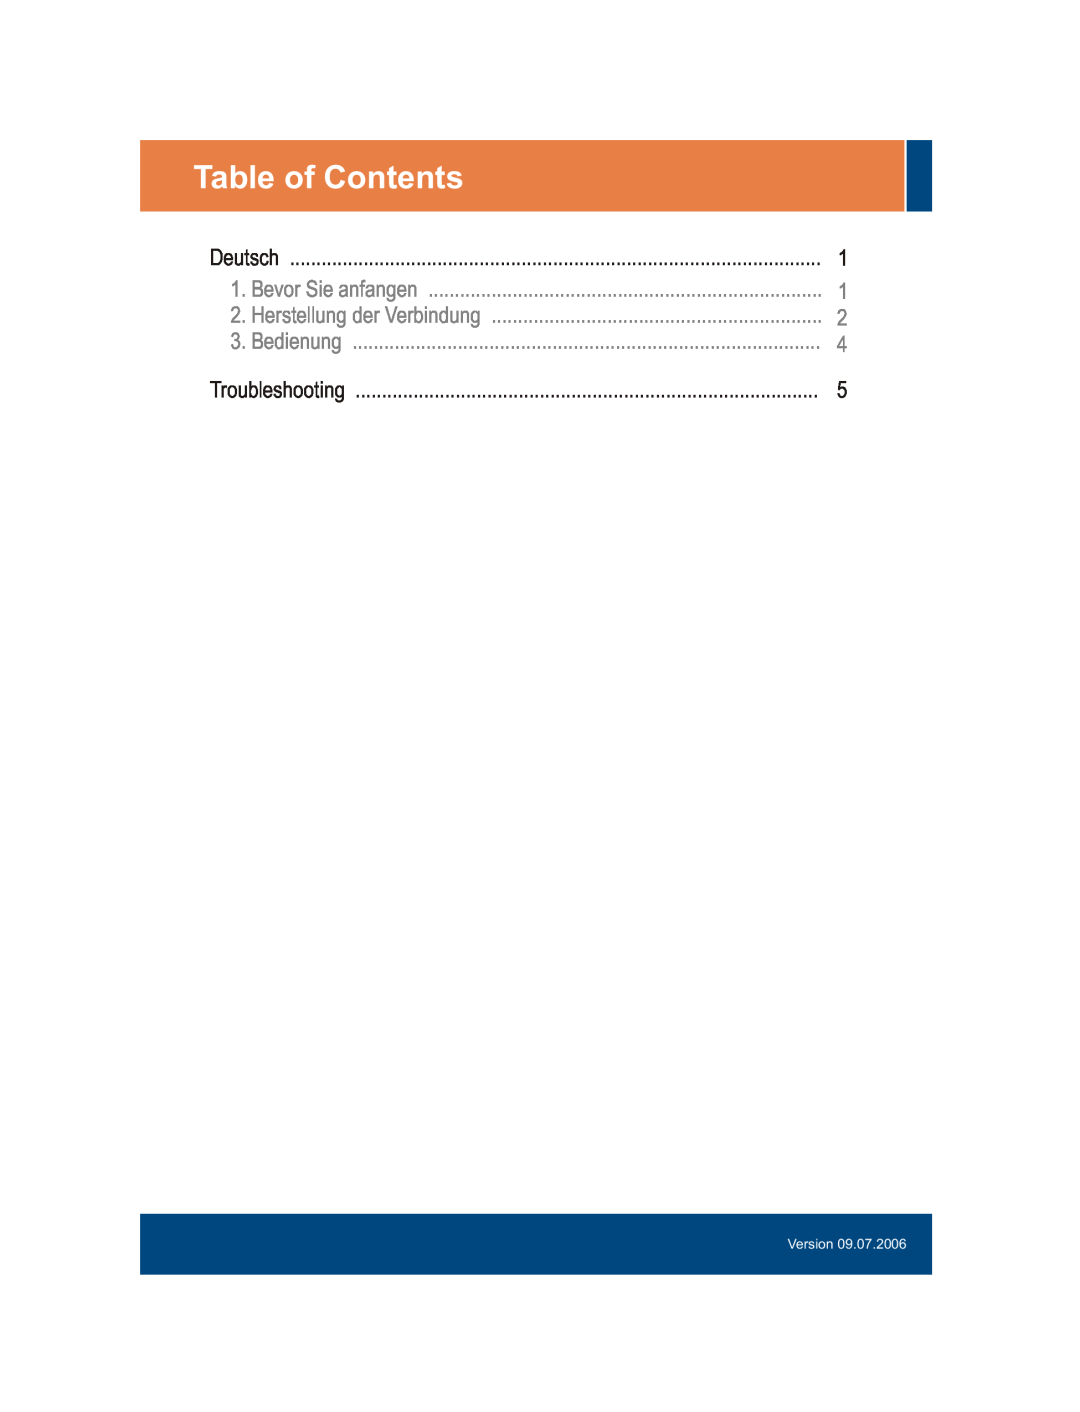 TRENDnet tk-209k, tk-409k manual Table of Contents, Bedienung, Bevor Sie anfangen, Herstellung der Verbindung, Version 